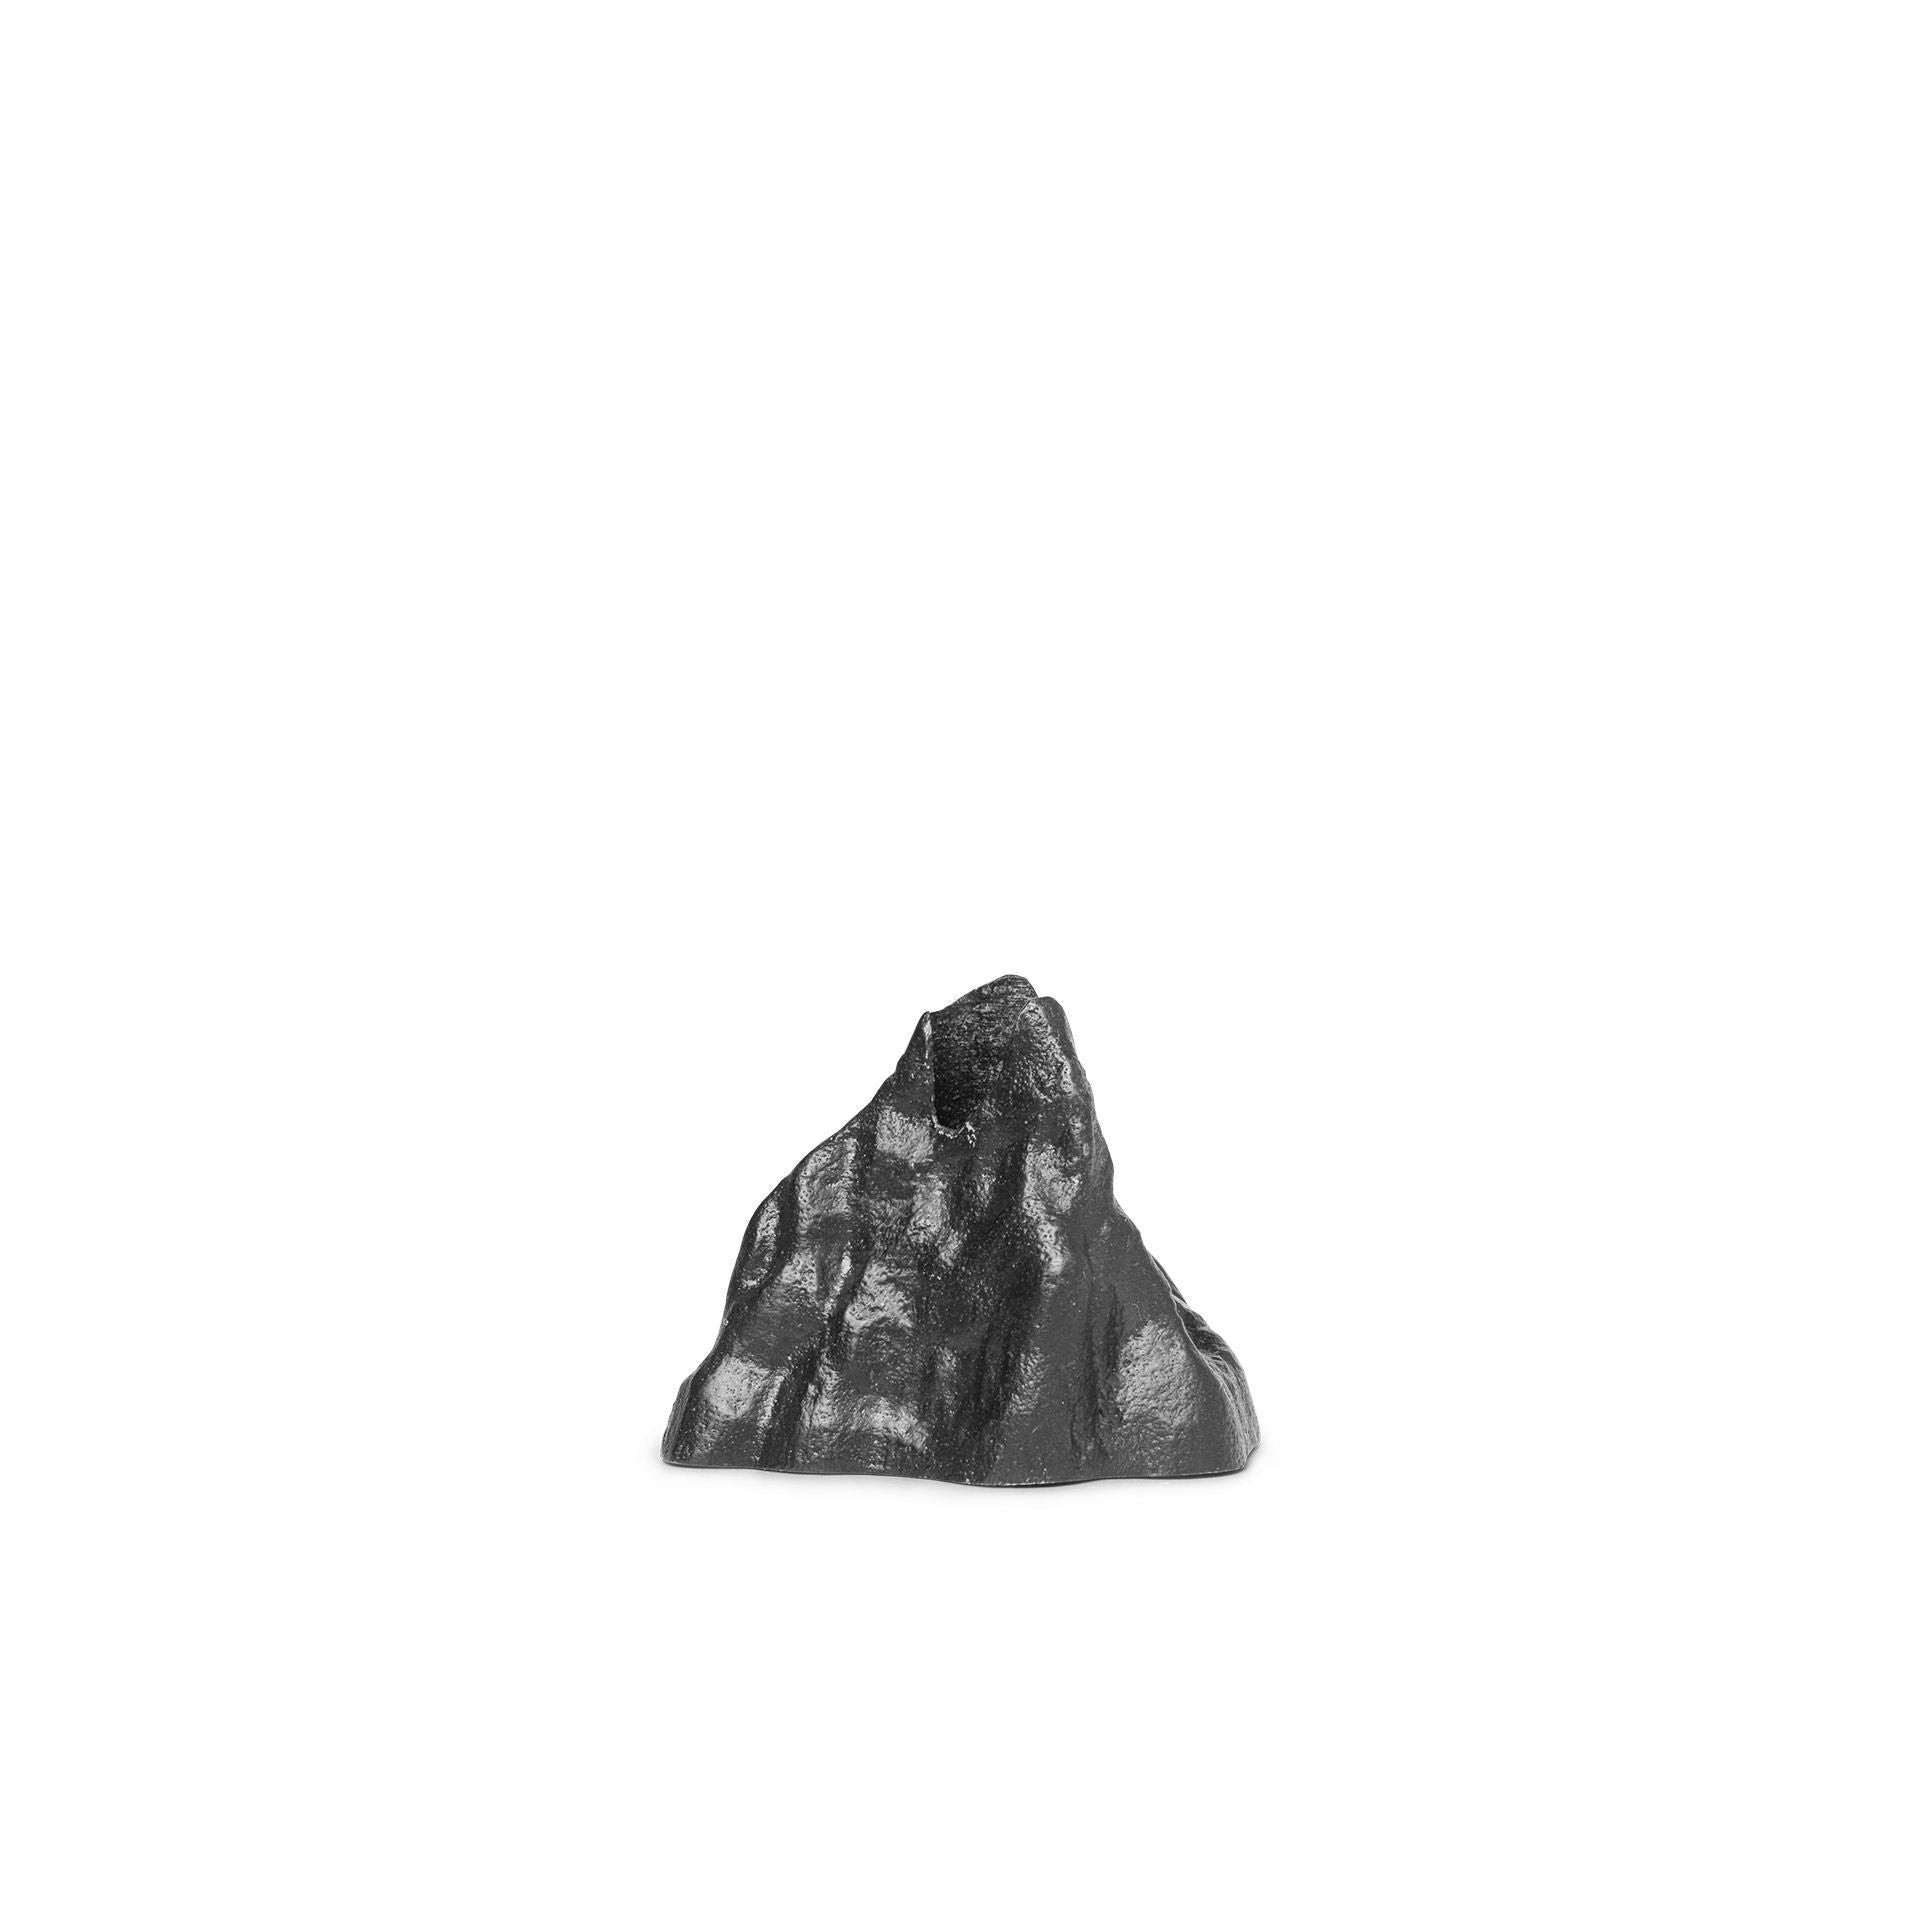 Držák křestního kamenného držáku ferm malý, zčernalý hliník